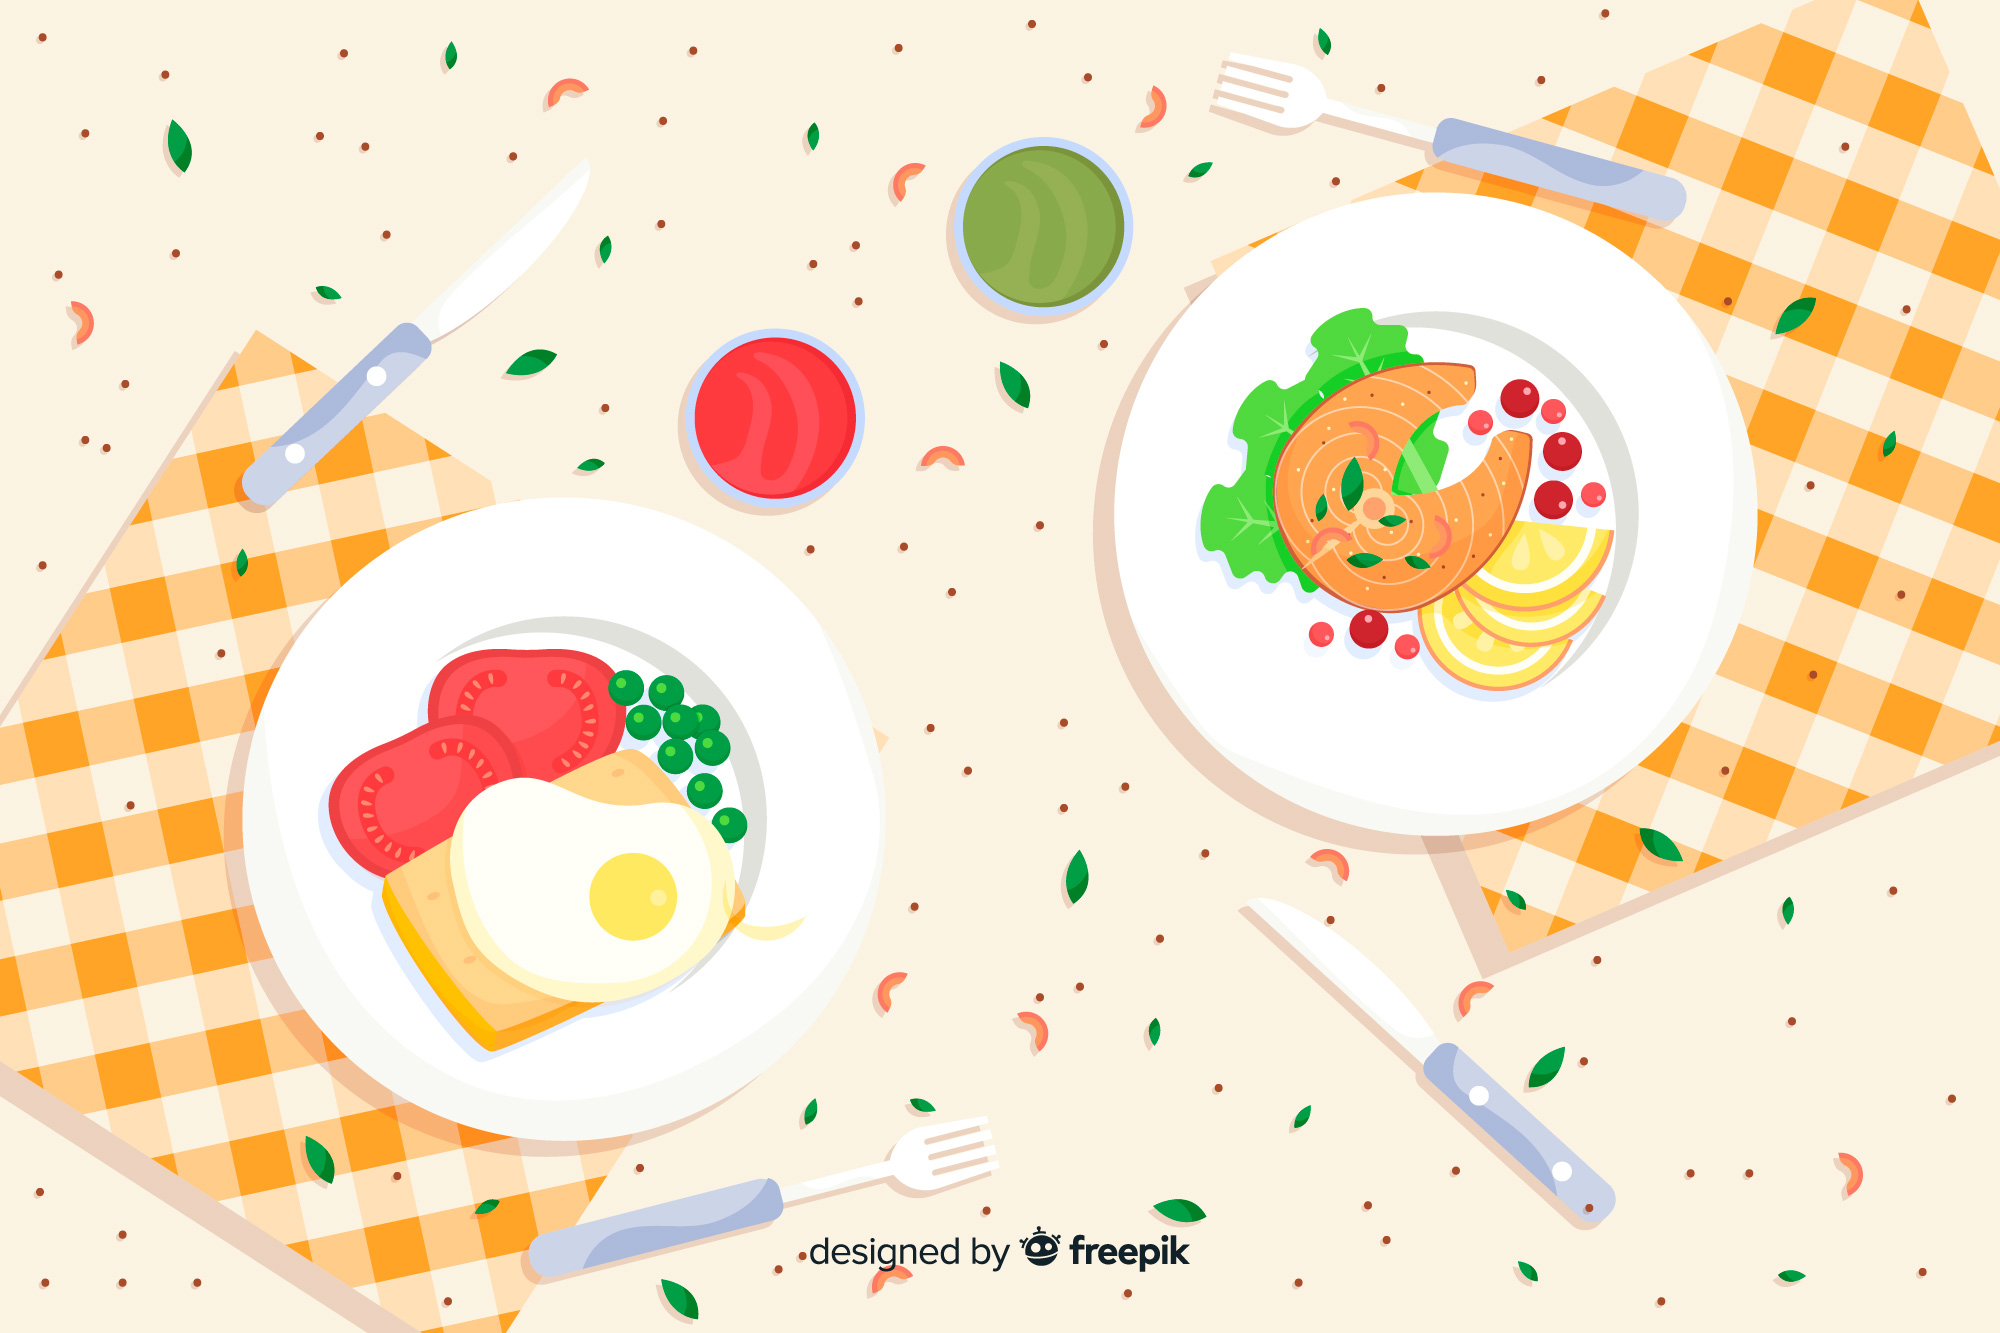 원푸드 다이어트는 금물이에요! 계획을 잘 세워서 맛난 음식을 챙겨드세요! (출처: Freepik)